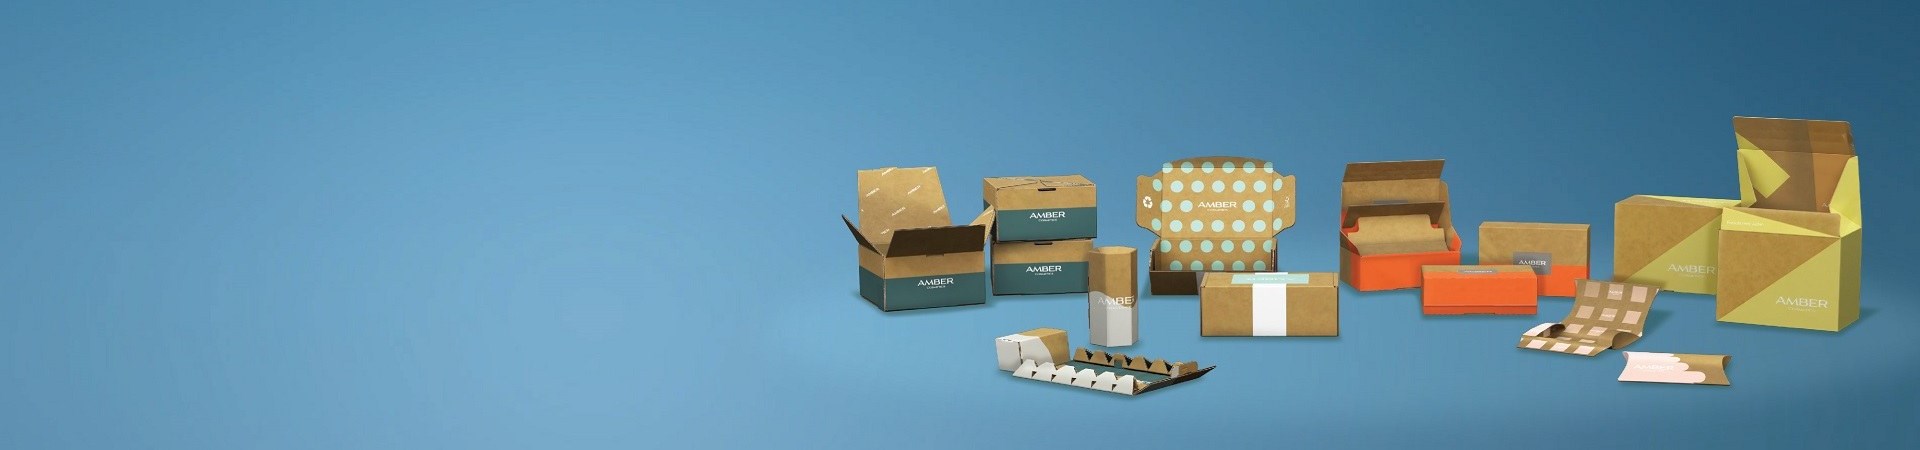 e-commerce verpakkingen, Gezondheids- en schoonheidsverpakkingen